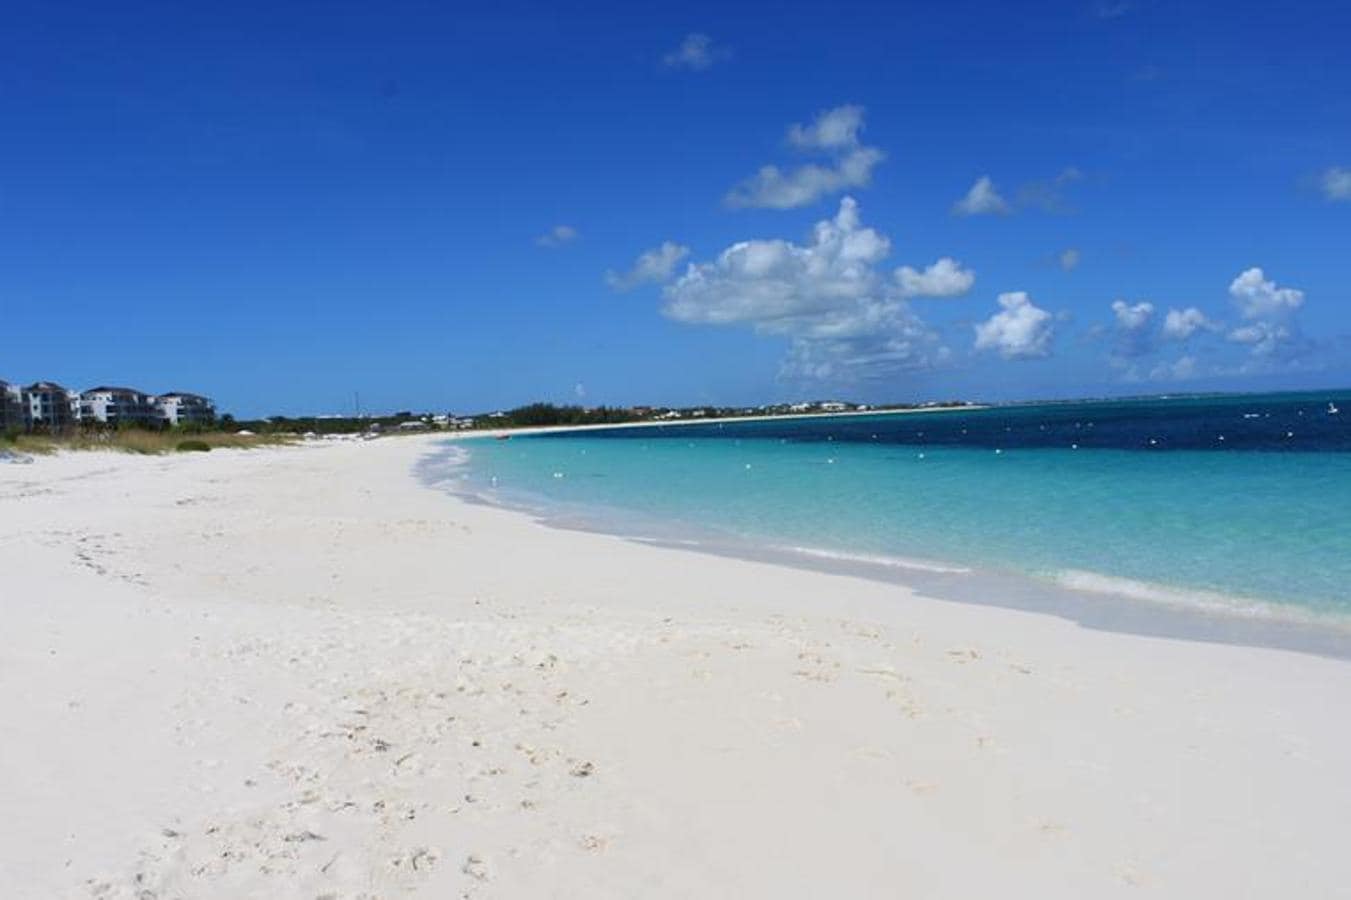 La Playa Grace Bay, ubicada en la isla de Providenciales (Turcas y Caicos, El Caribe) y con un mar increíblemente turquesa, ha encabezado la lista logrando el primer puesto.